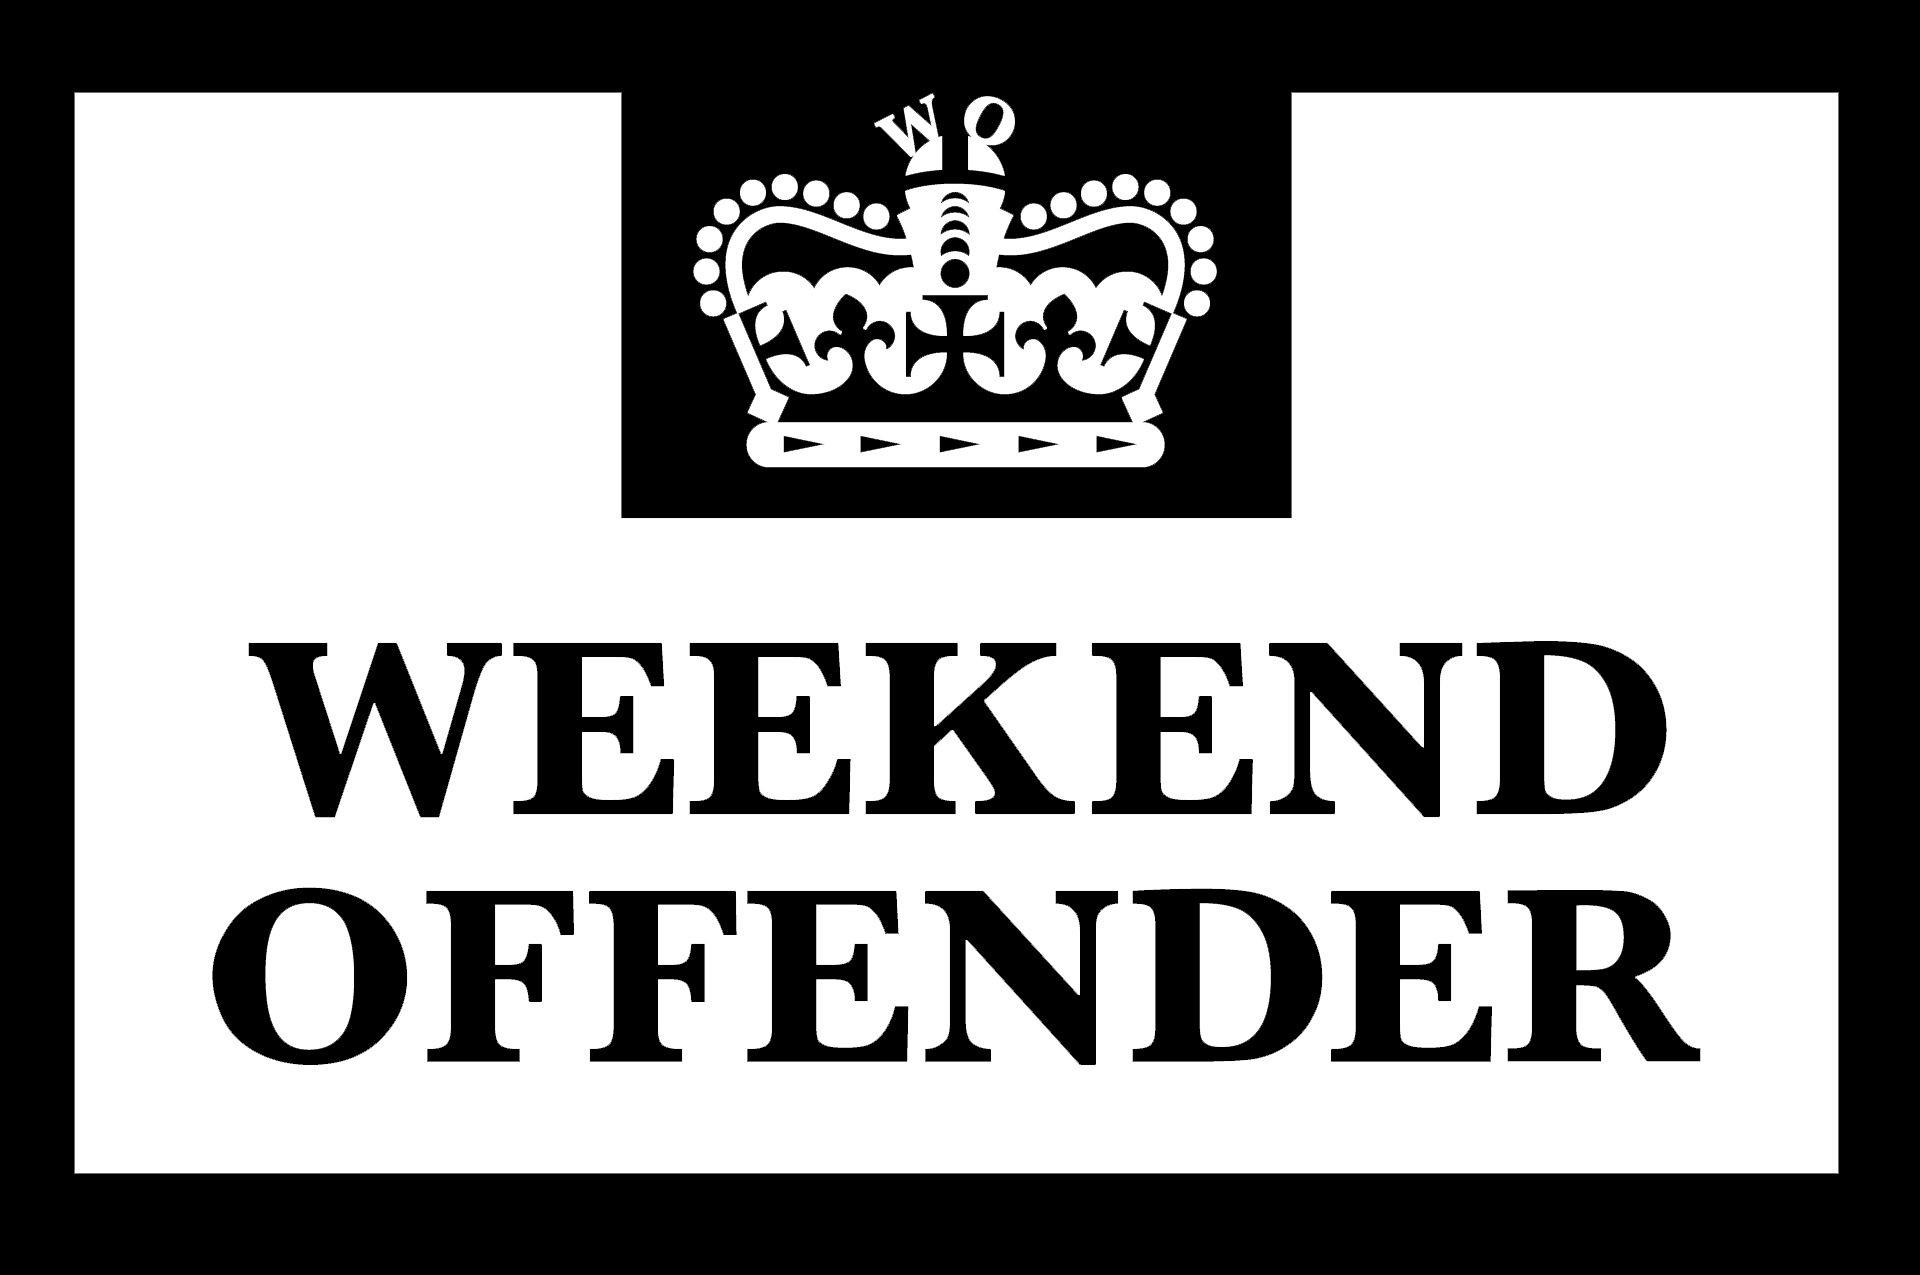 Download Logo Weekend Offender - KibrisPDR